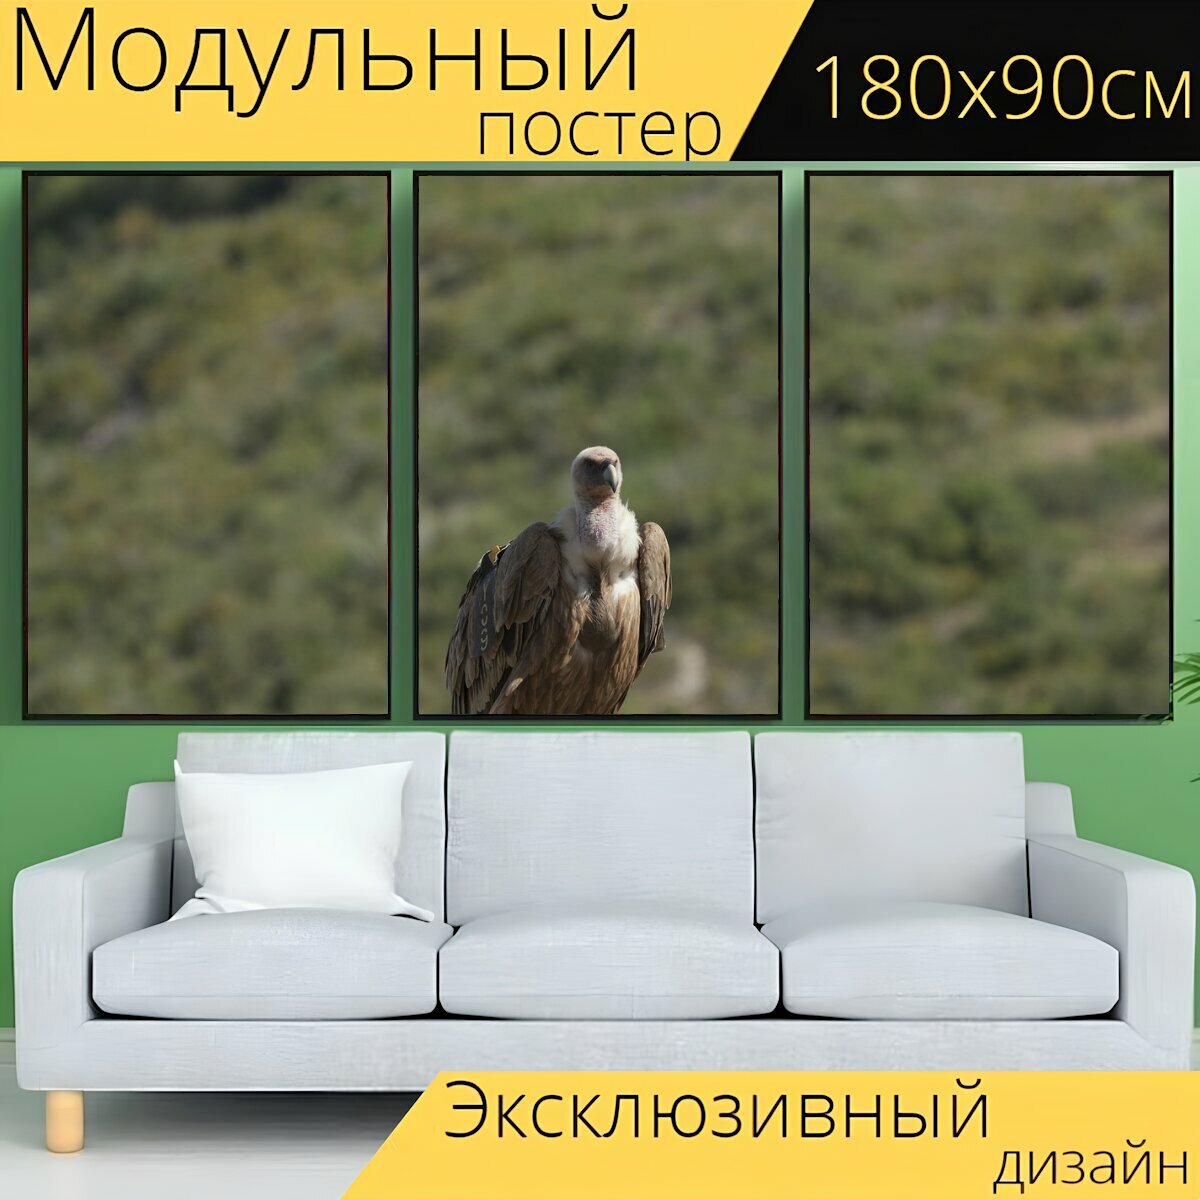 Модульный постер "Стервятник, птица, хищная птица" 180 x 90 см. для интерьера